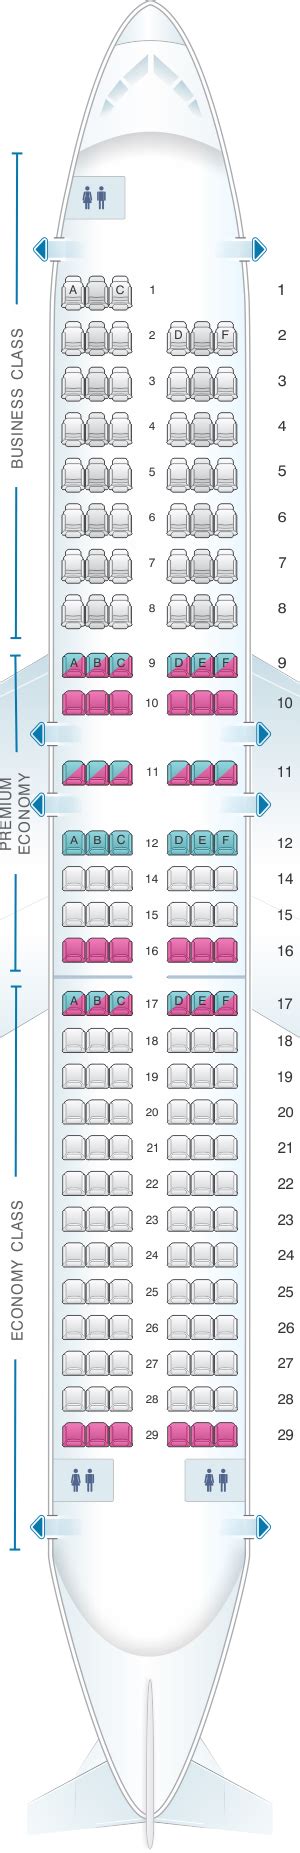 Plan De Cabine Air France Airbus A320 Europe Seatmaestrofr